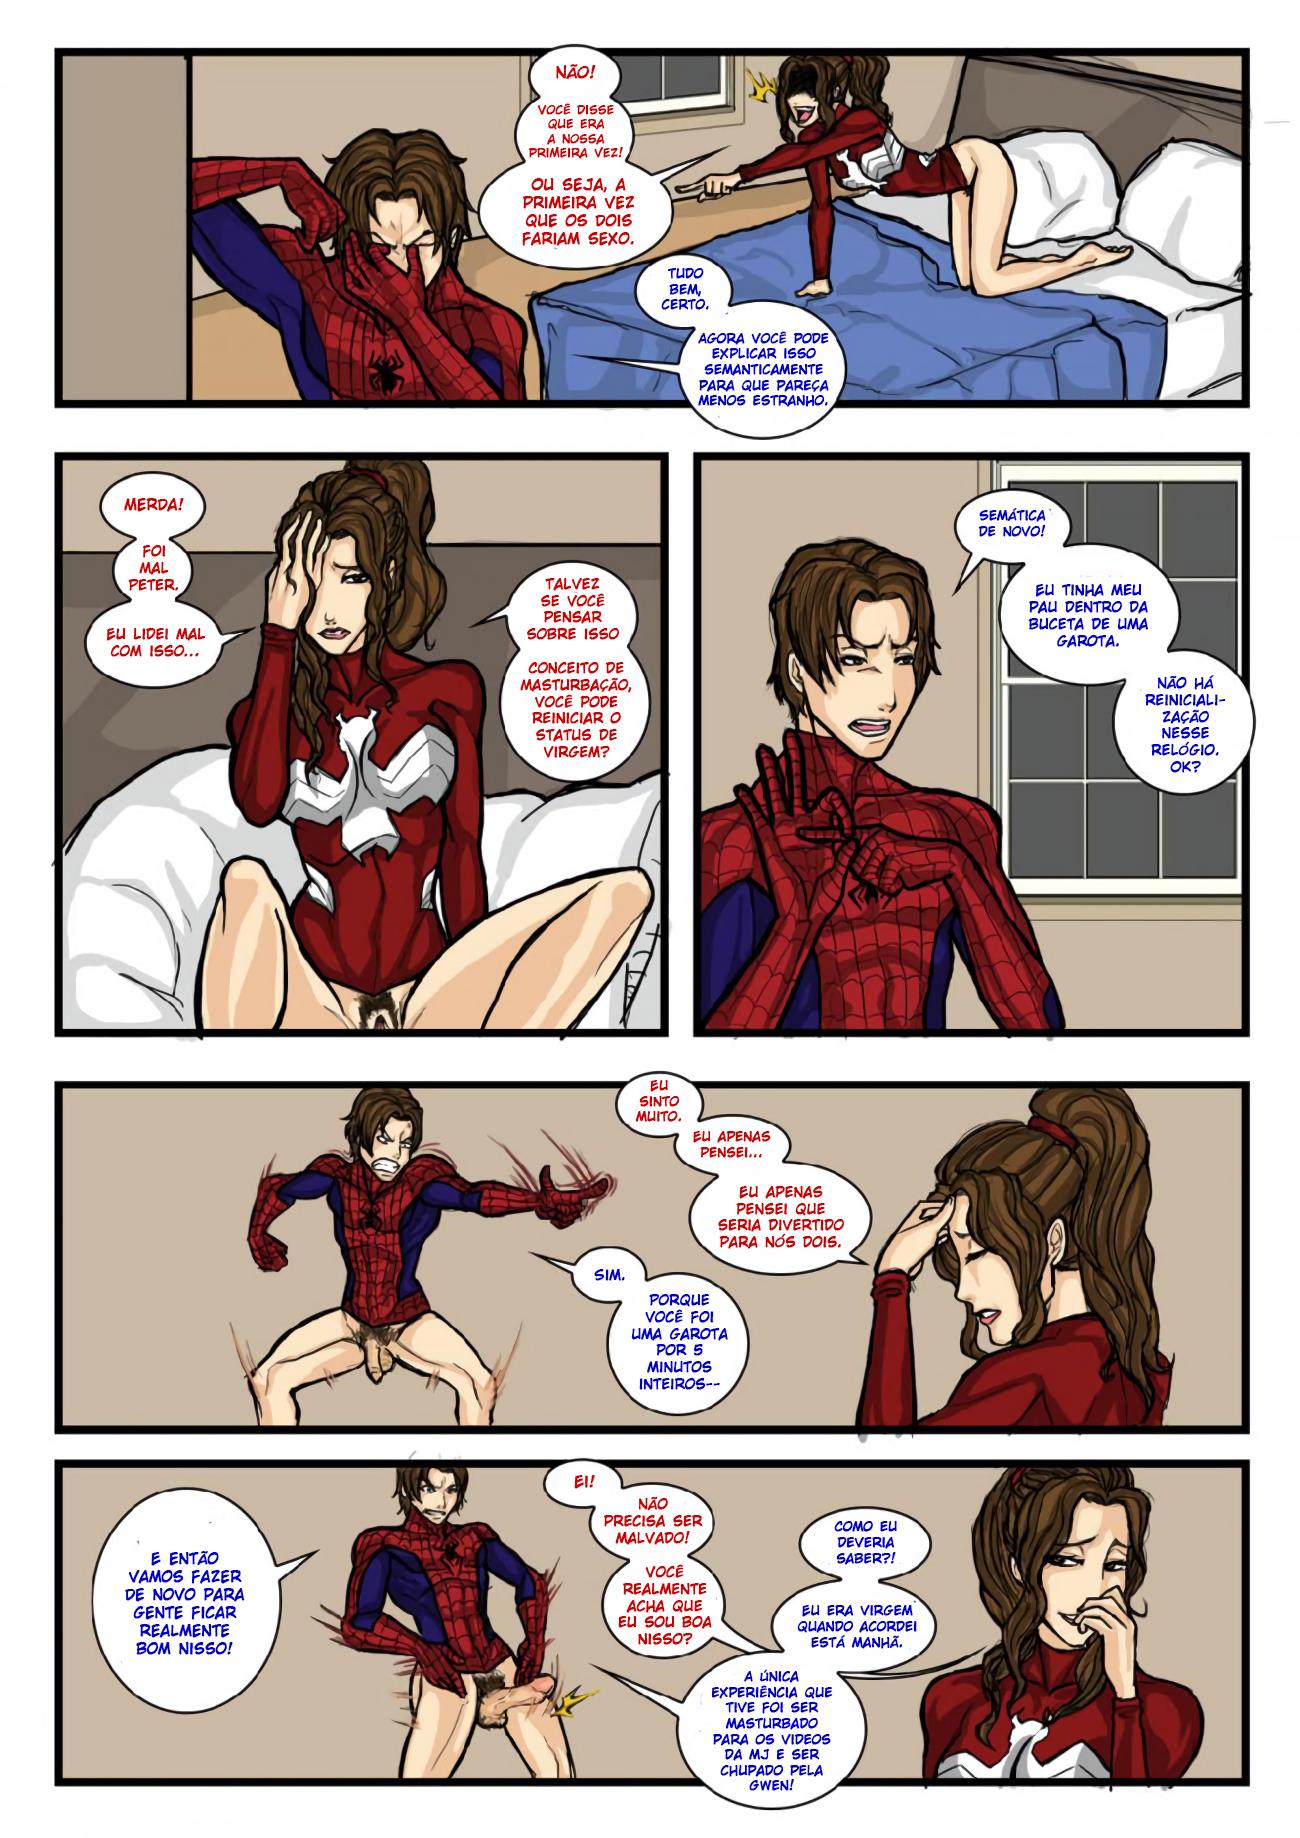 Sipder-man em: Spidercest, transando com a irmã!